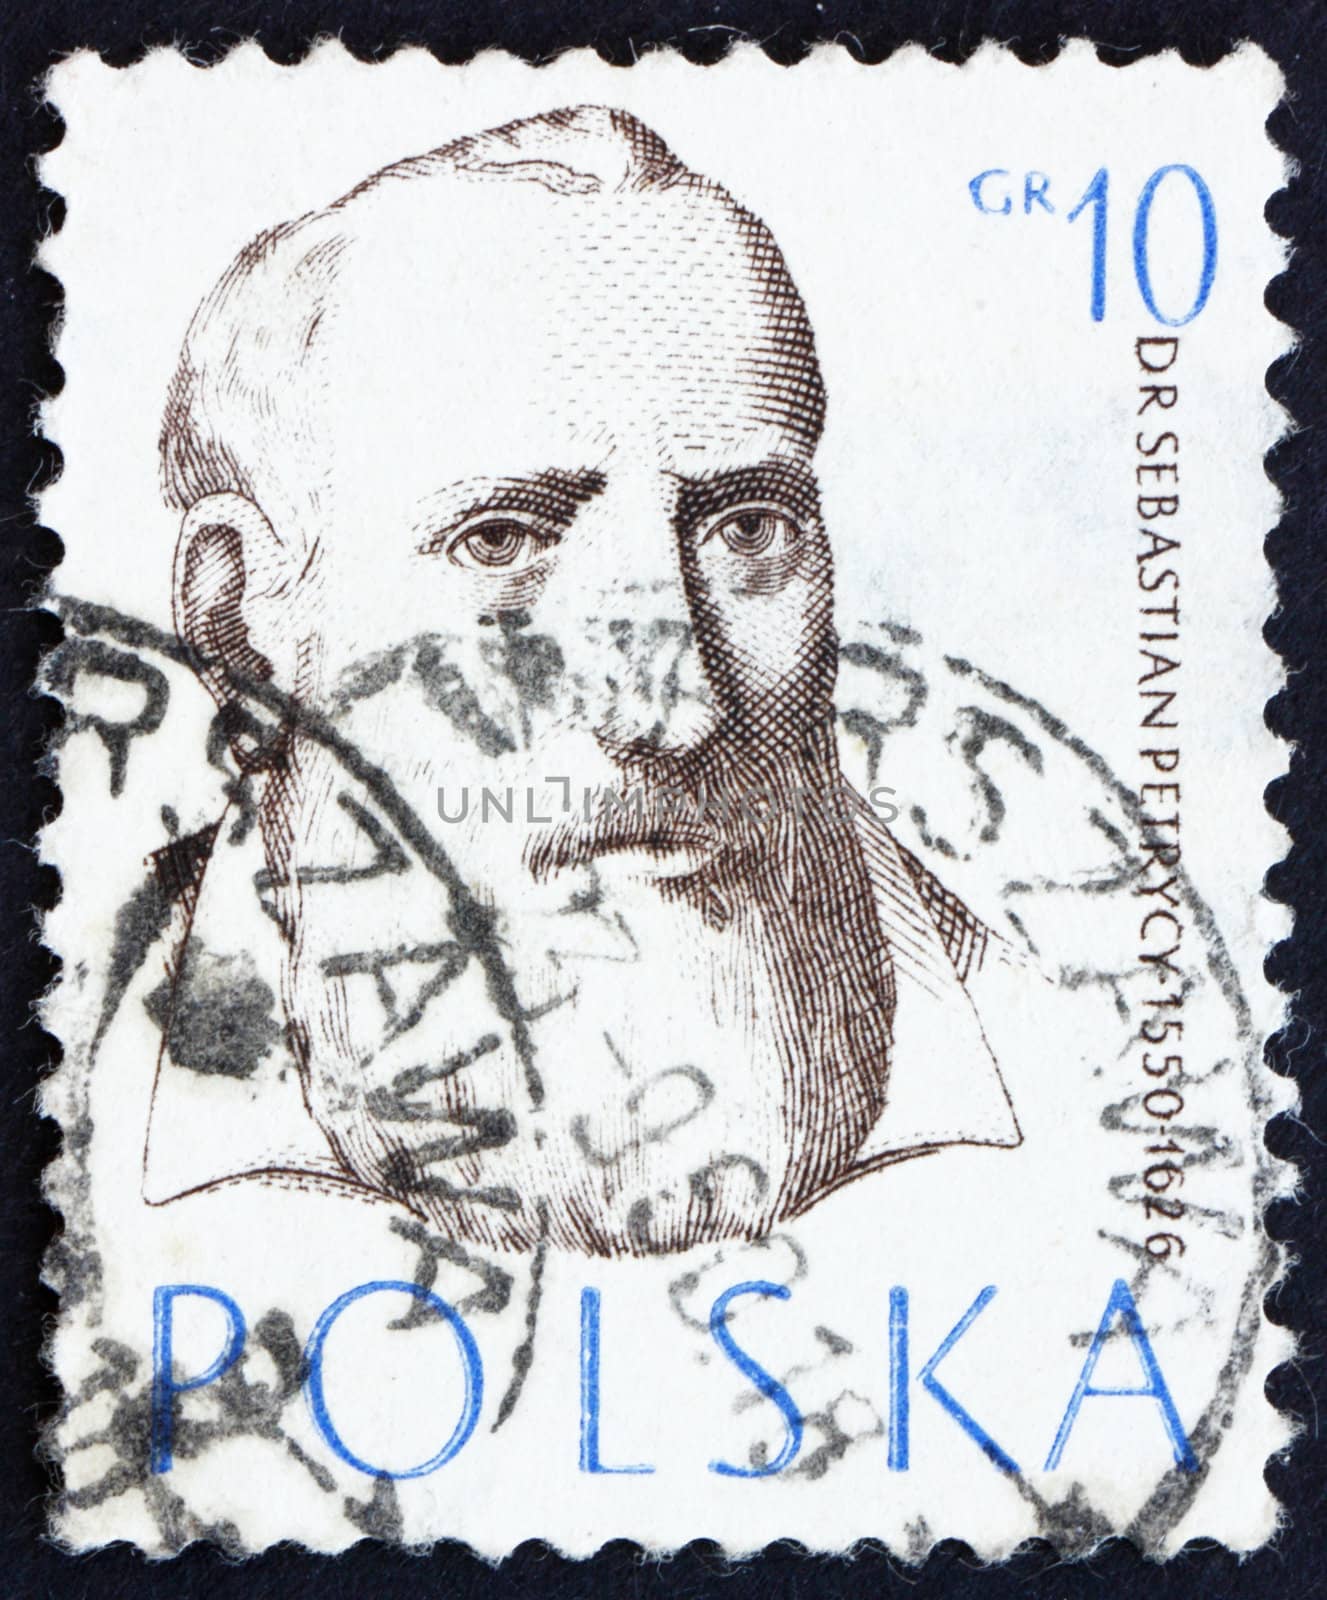 POLAND - CIRCA 1957: a stamp printed in the Poland shows Sebastian Petrycy, Philosopher and Physician, circa 1957